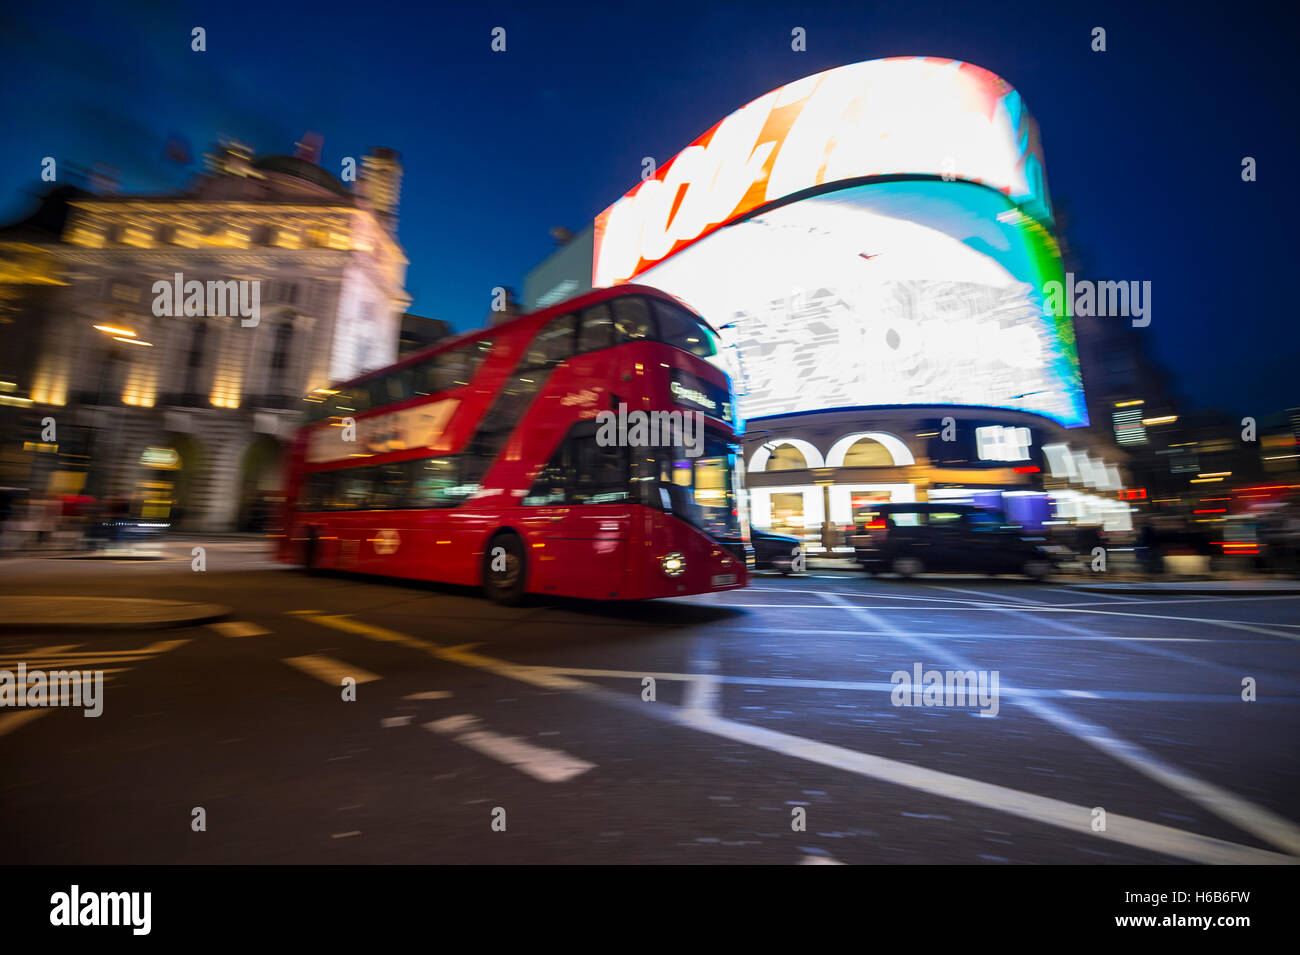 Londra - Ottobre 1, 2016: modern double-decker bus passa attraverso le luci al neon di Piccadilly Circus in notturno di motion blur. Foto Stock